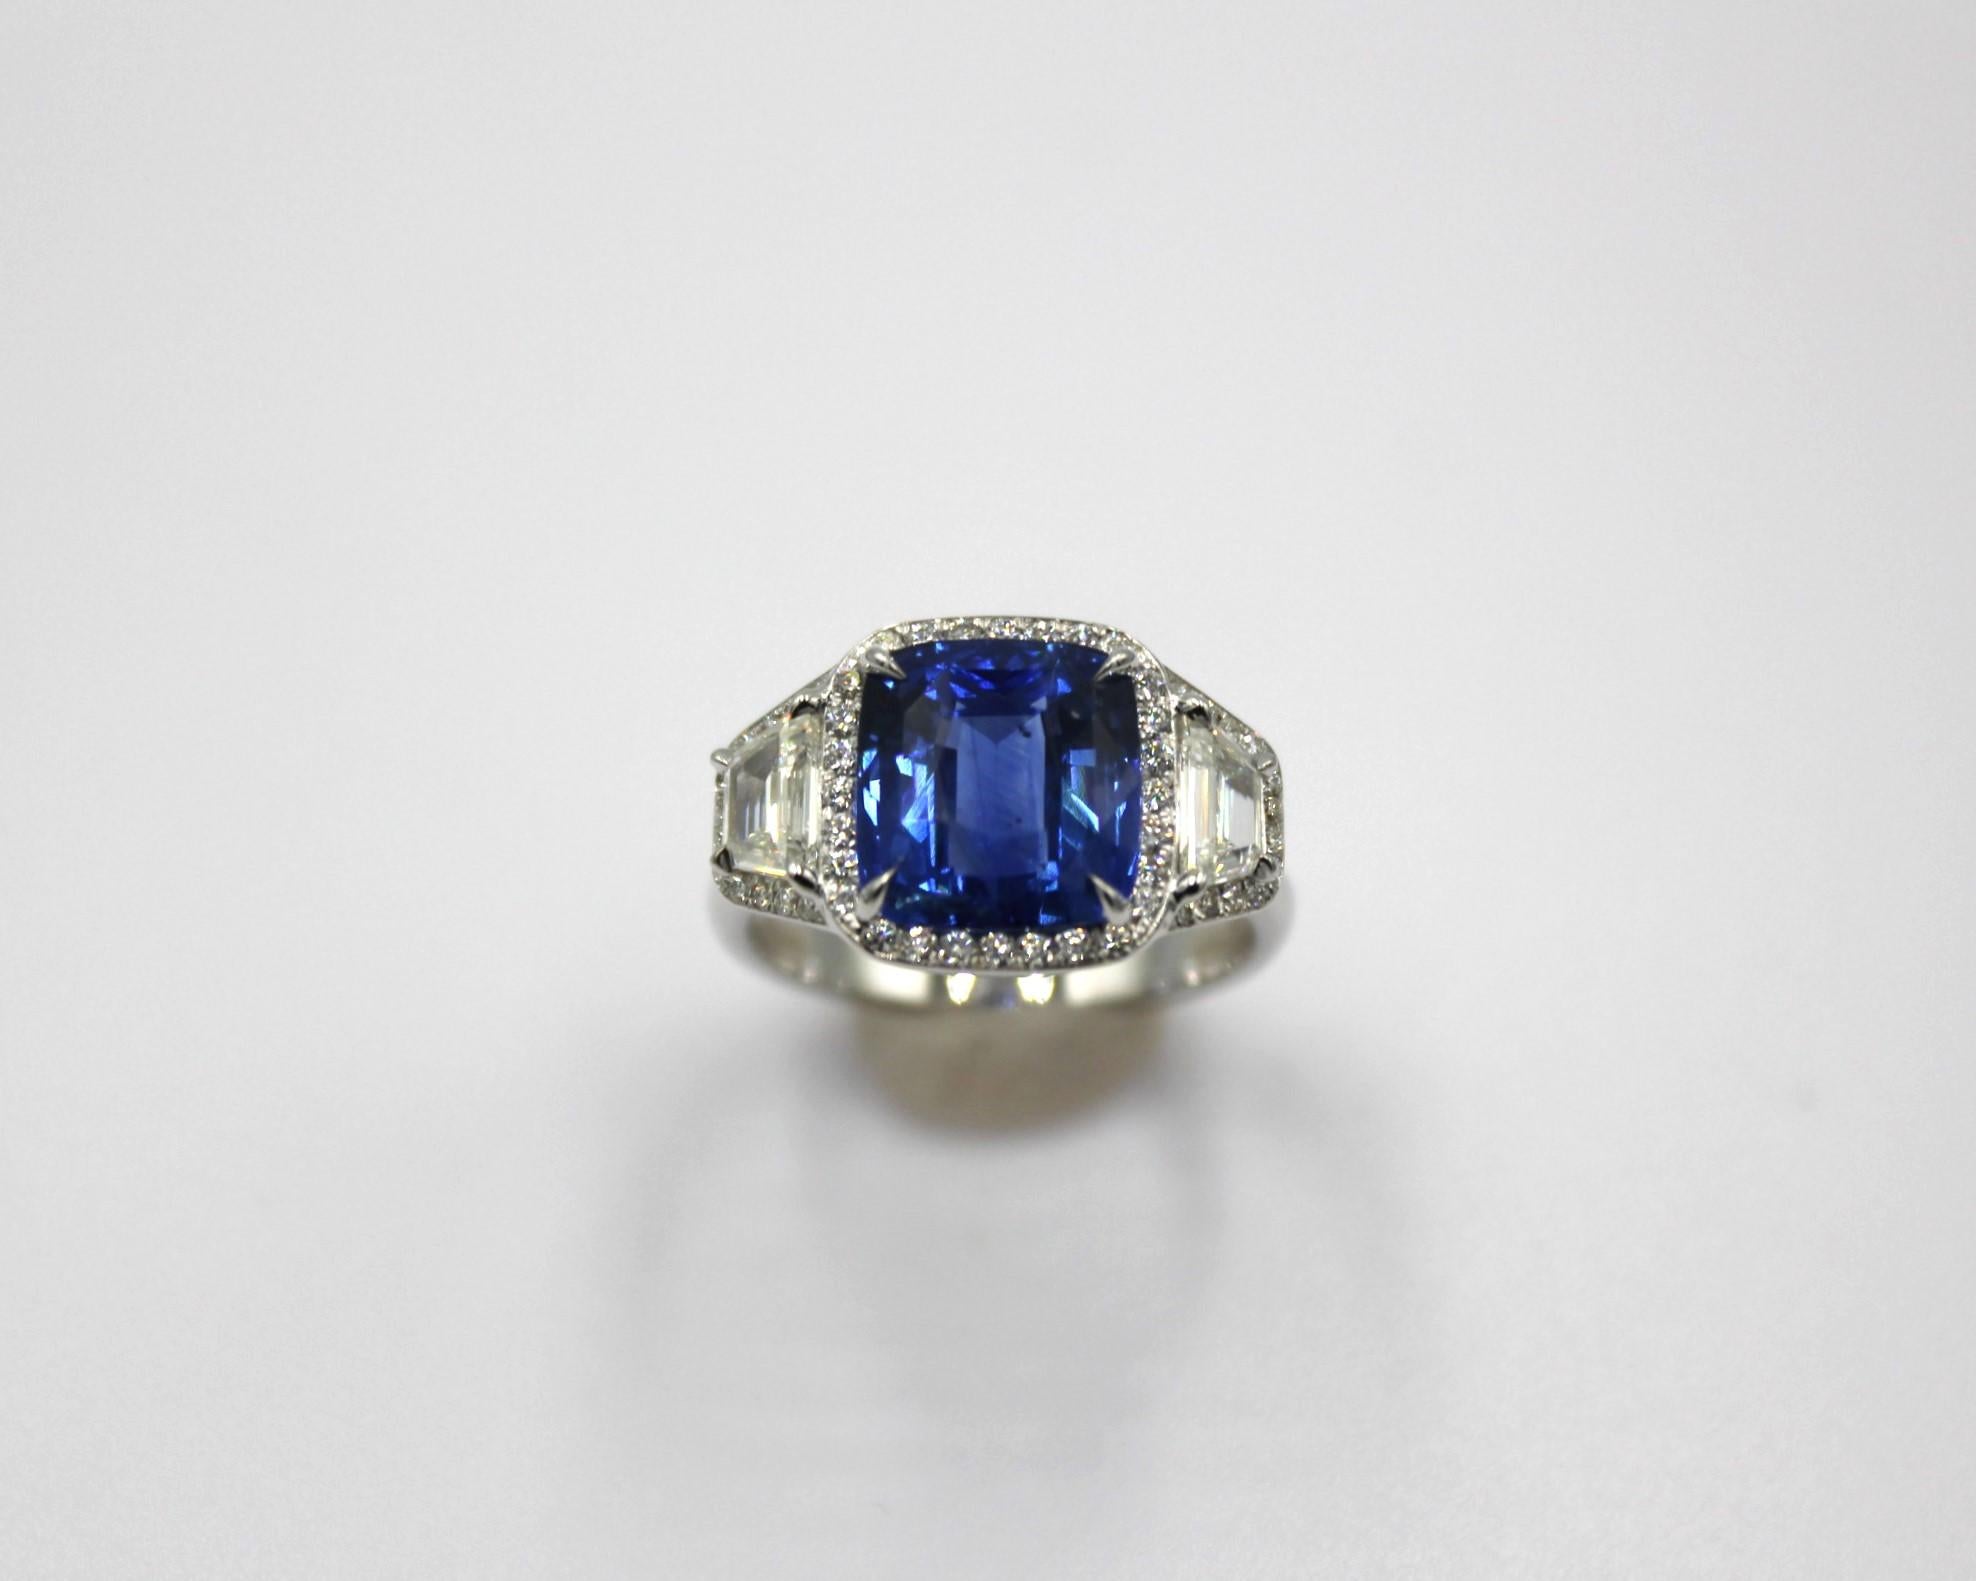 5,29 Karat Ceylon-Saphir im Kissenschliff, umrahmt von 44 runden Diamanten und 2 trapezförmigen Diamanten mit einem Gesamtgewicht von 1,04 Karat. 

Dieser atemberaubende Saphir-Diamant-Ring wird Ihre Eleganz und Einzigartigkeit unterstreichen.